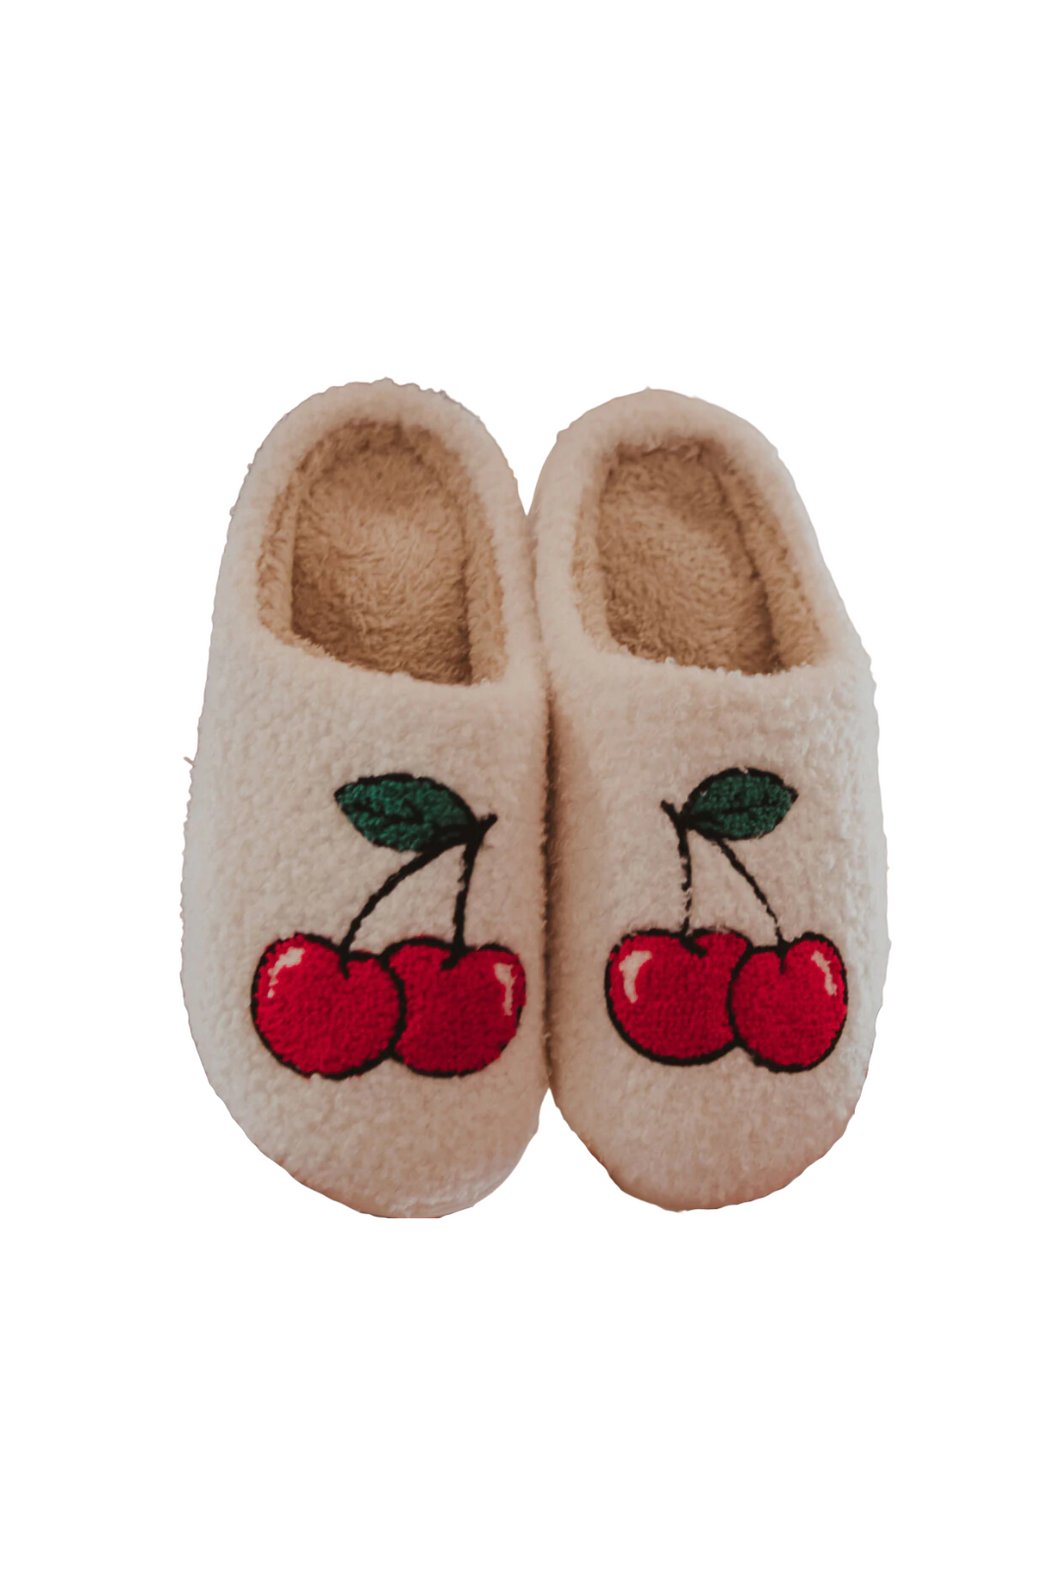 Cherries Slippers